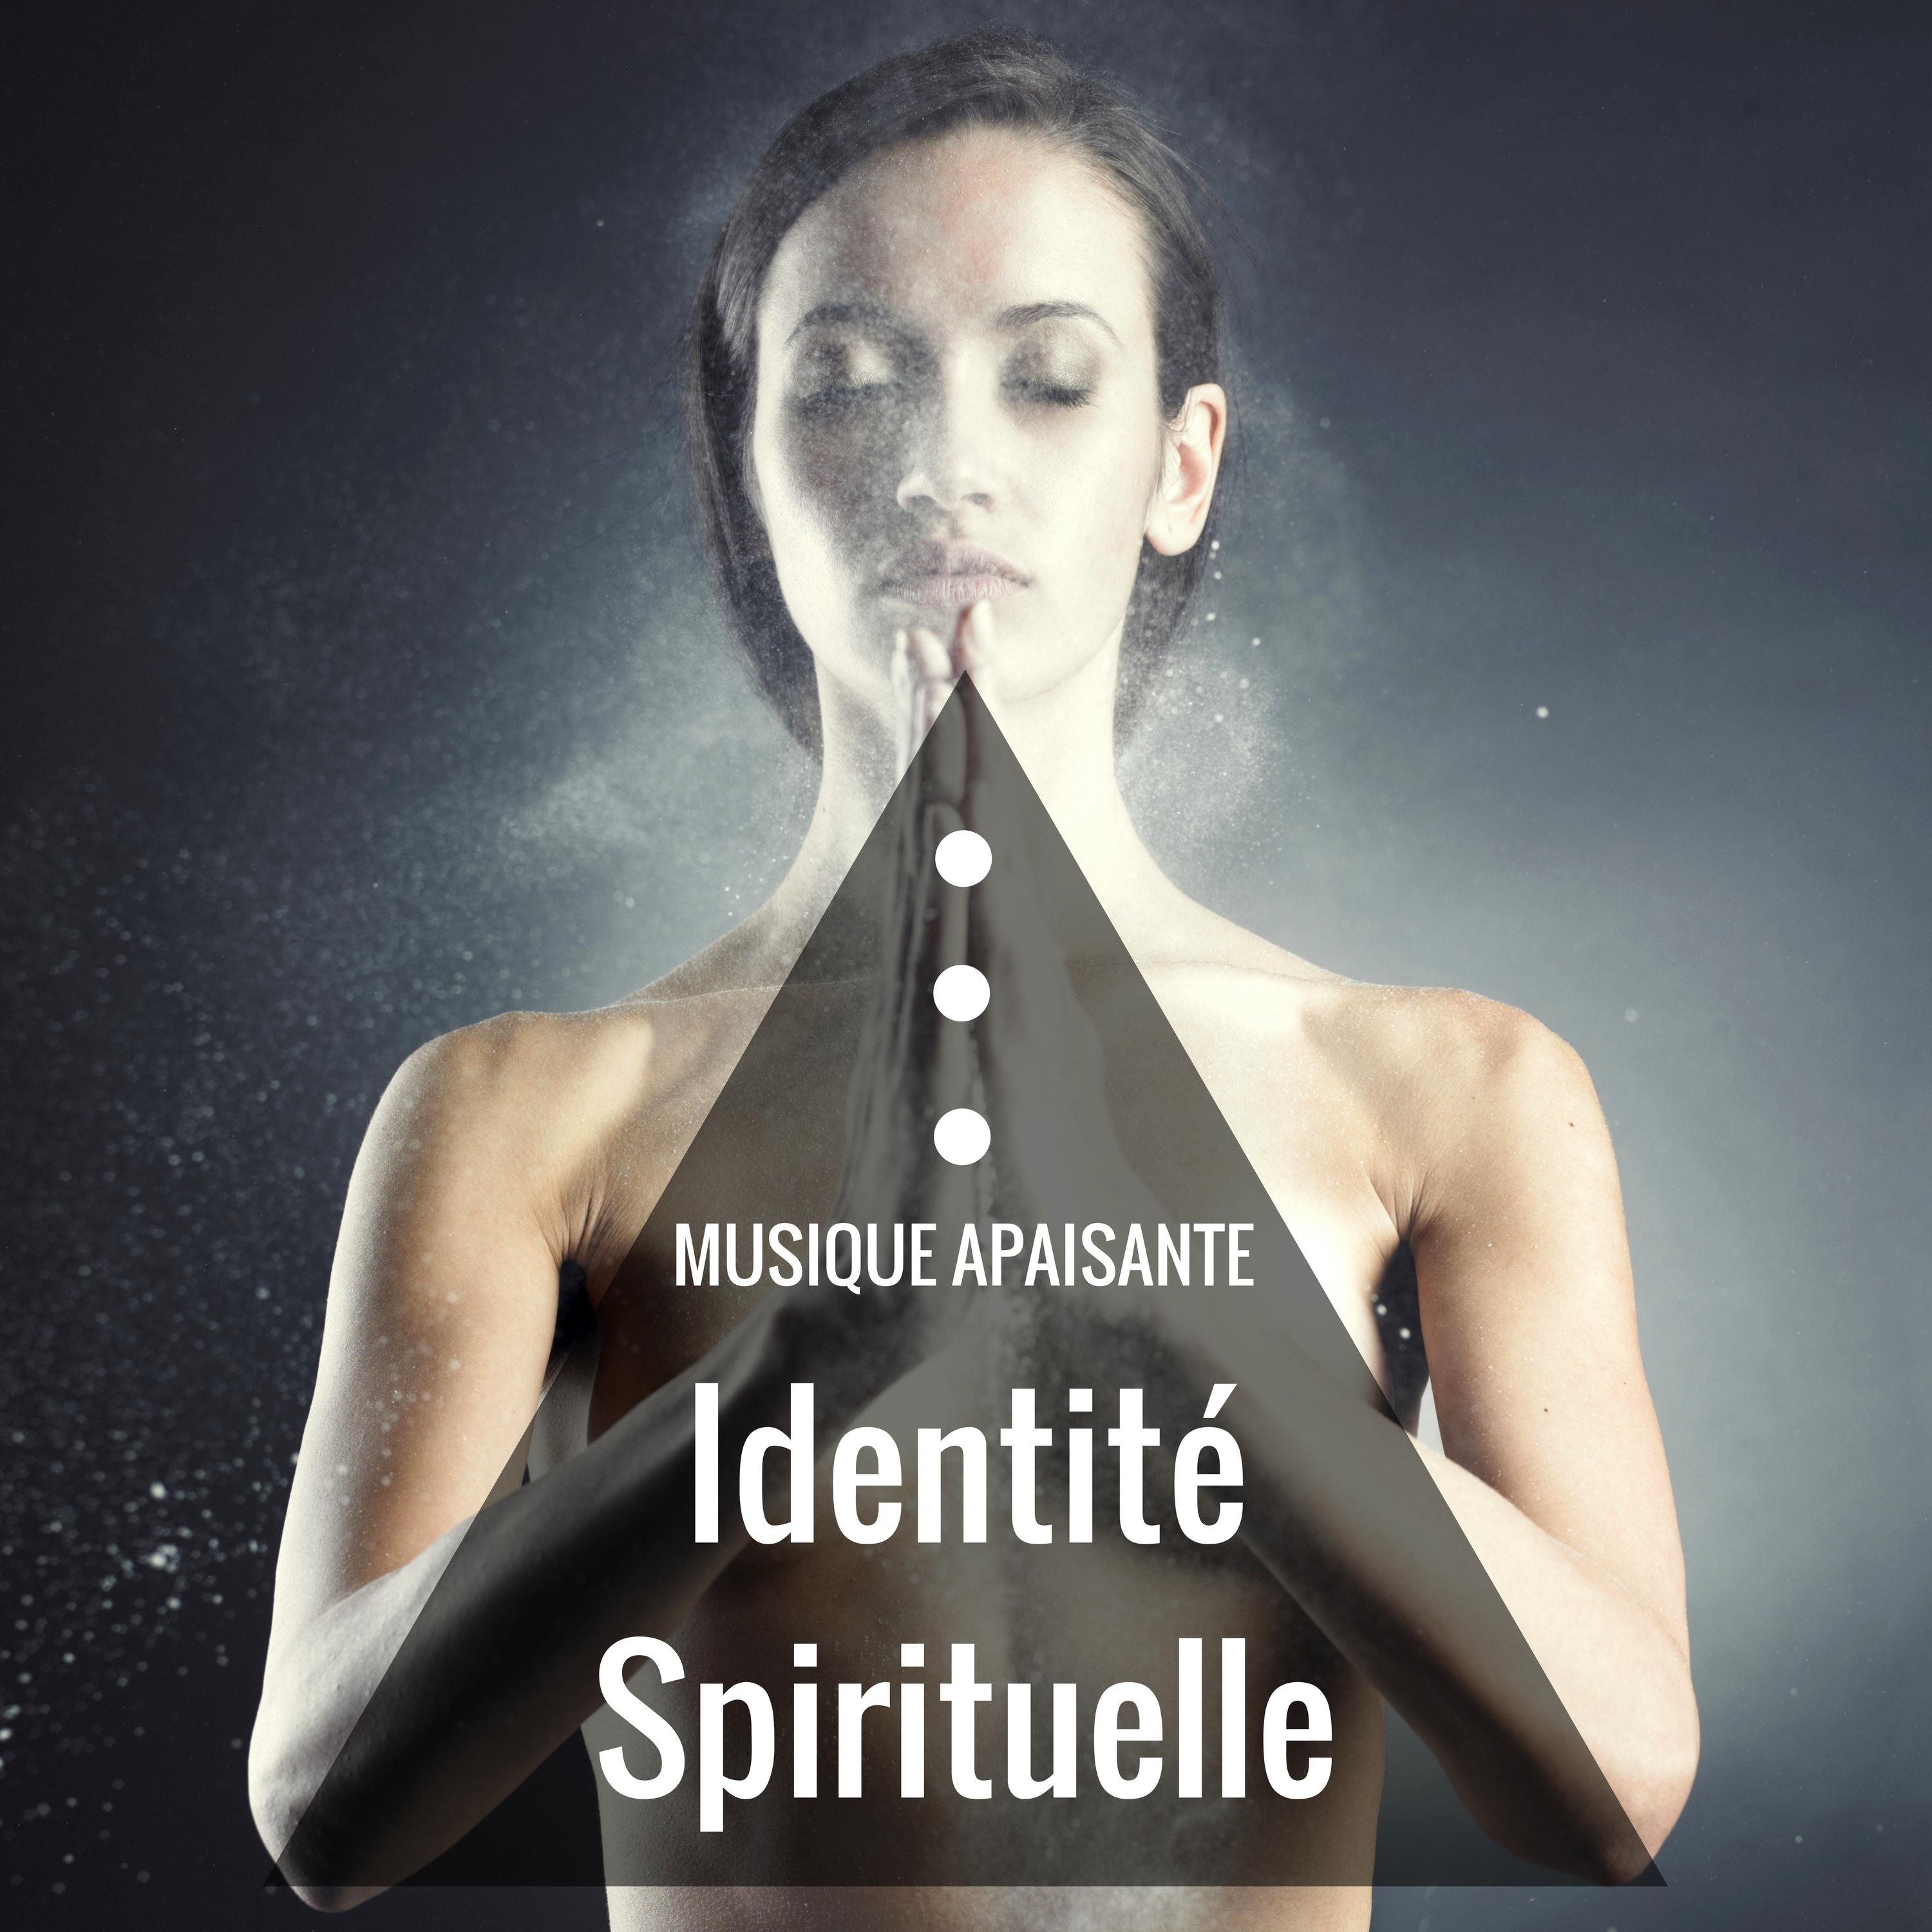 Identite Spirituelle: Musique apaisante de re flexion et inspiration avec sons de la nature